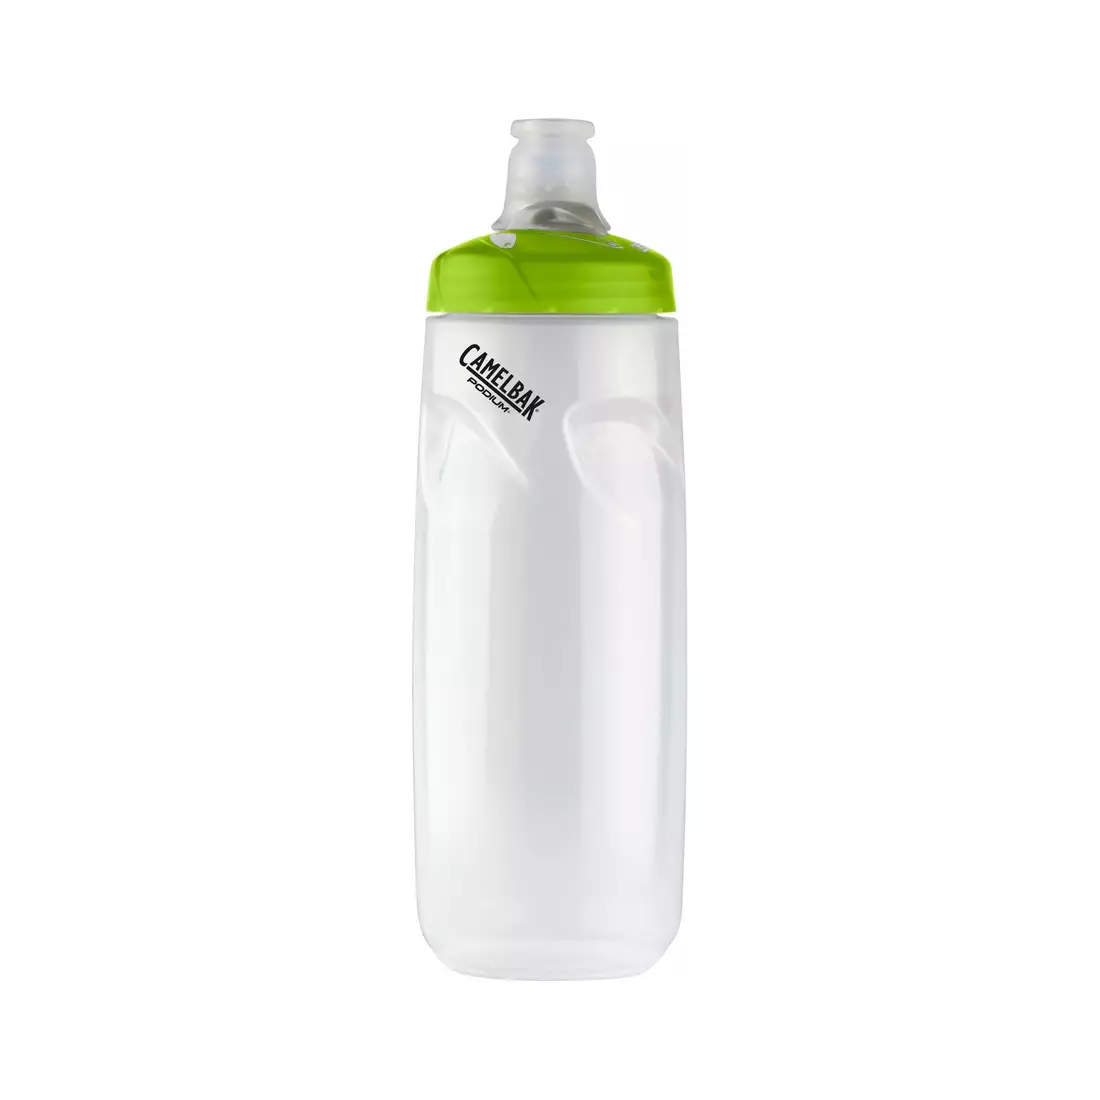 Camelbak SS17 Podium bicycle water bottle 24oz/ 710 ml Green/Logo